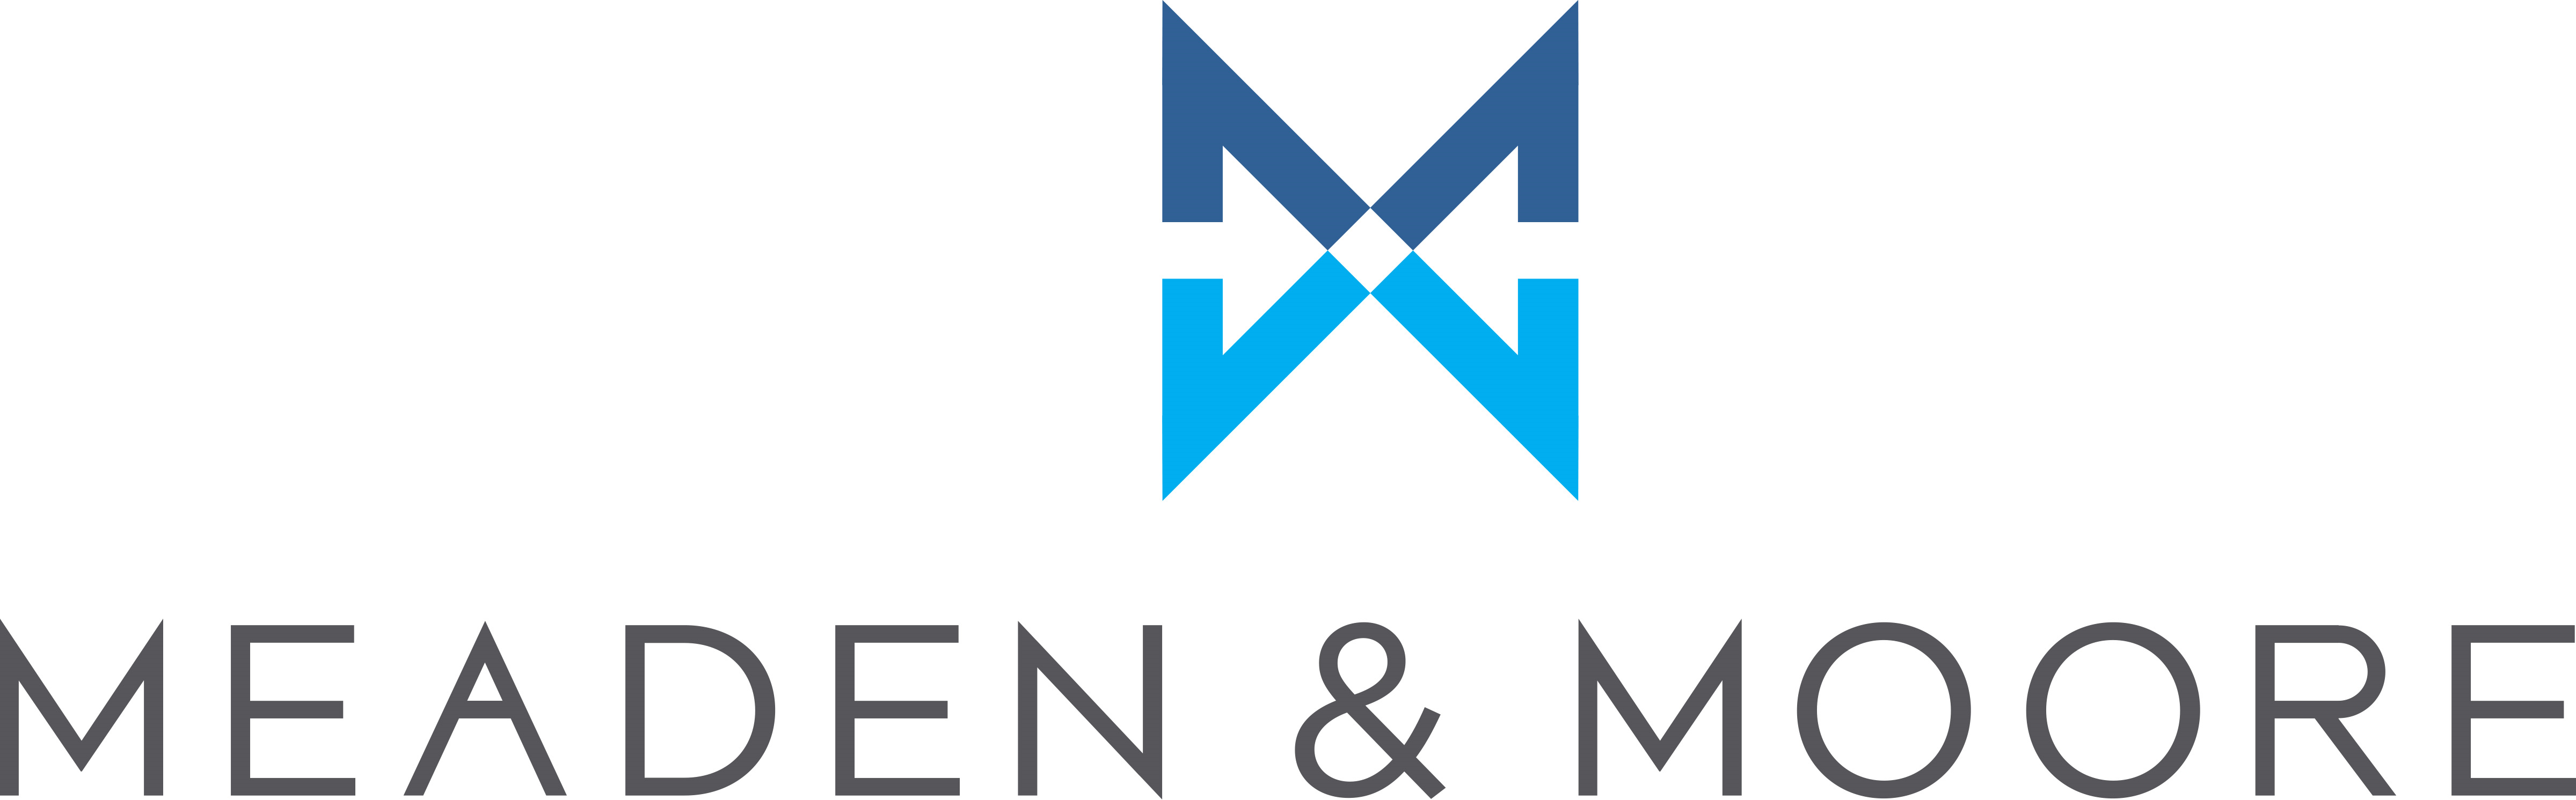 Meaden & Moore Company Logo